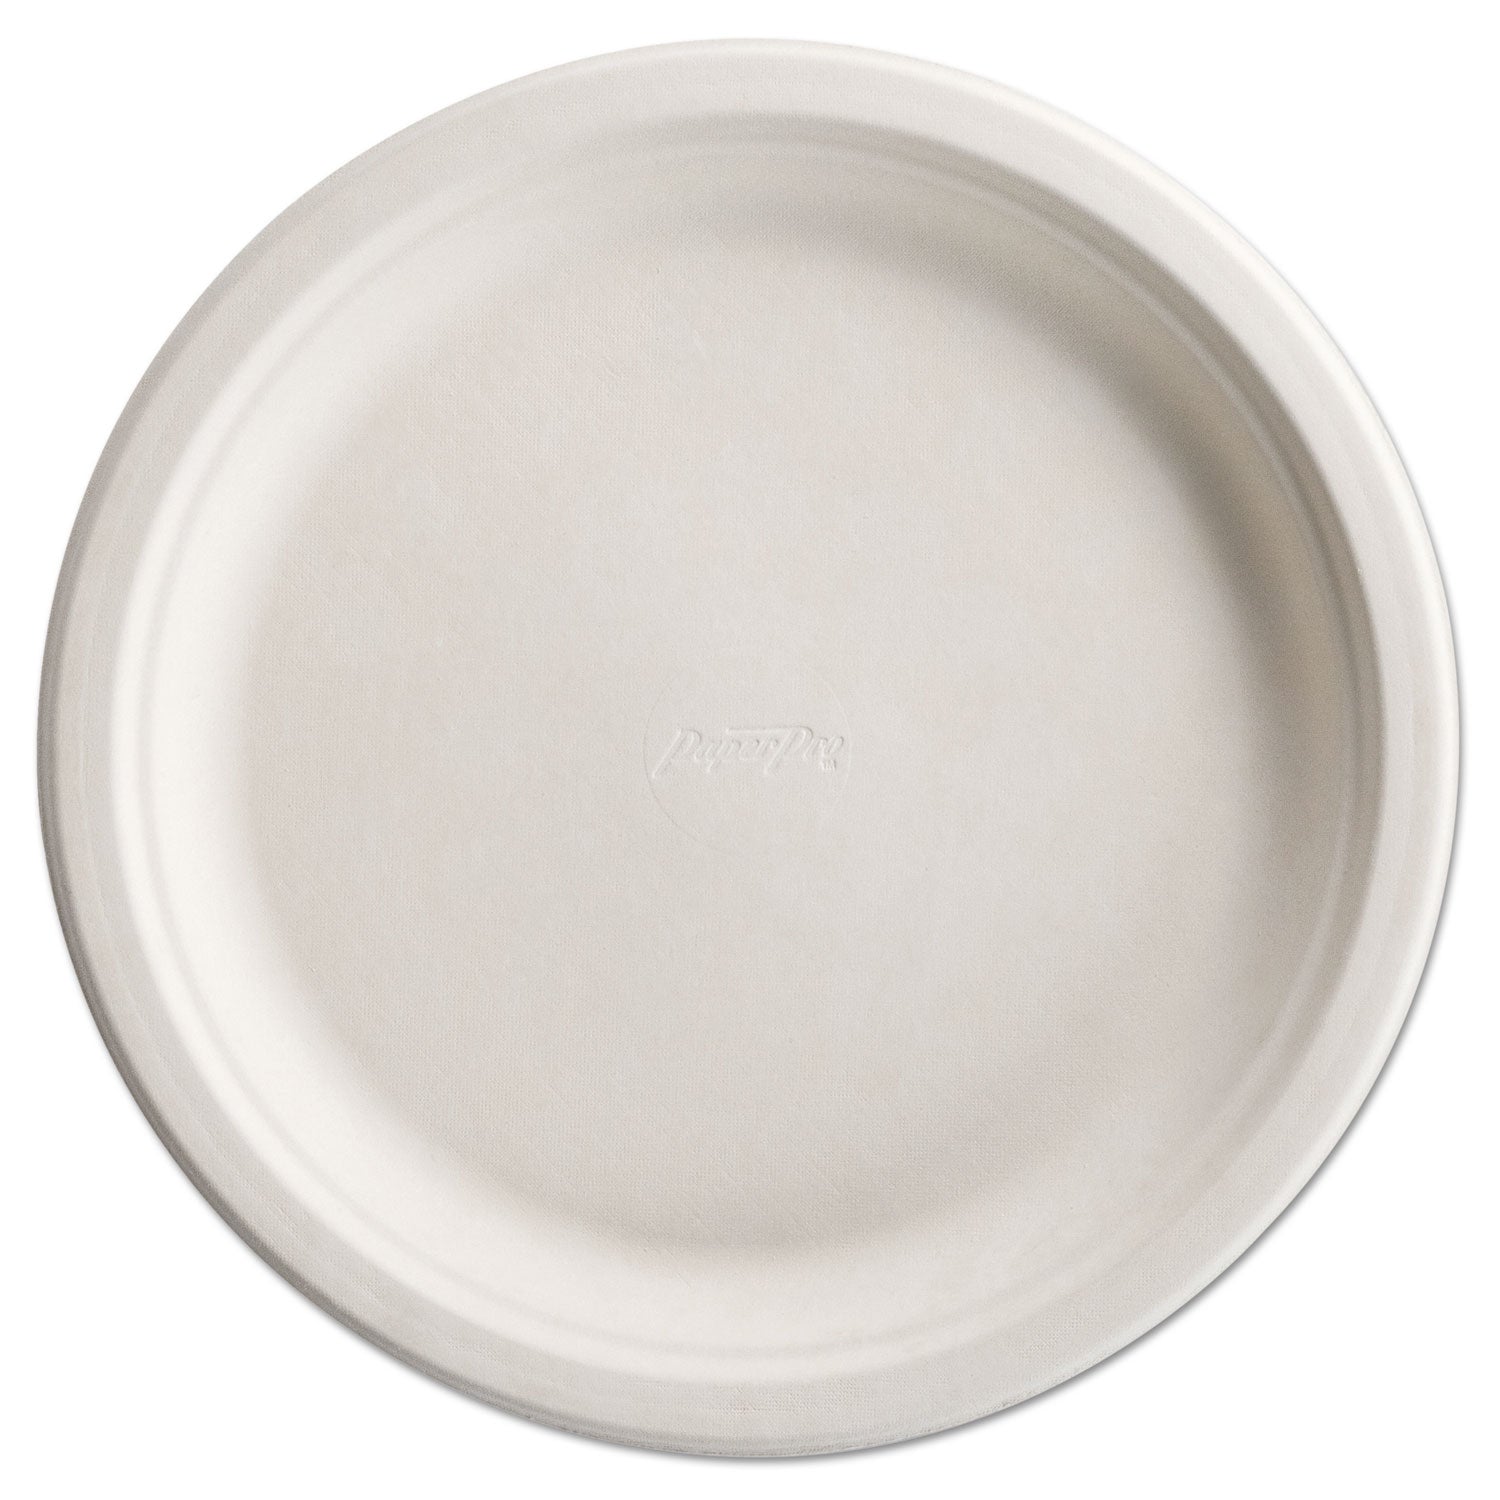 paperpro-naturals-fiber-dinnerware-plate-105-dia-natural-125-pack-4-packs-carton_huh25776 - 1